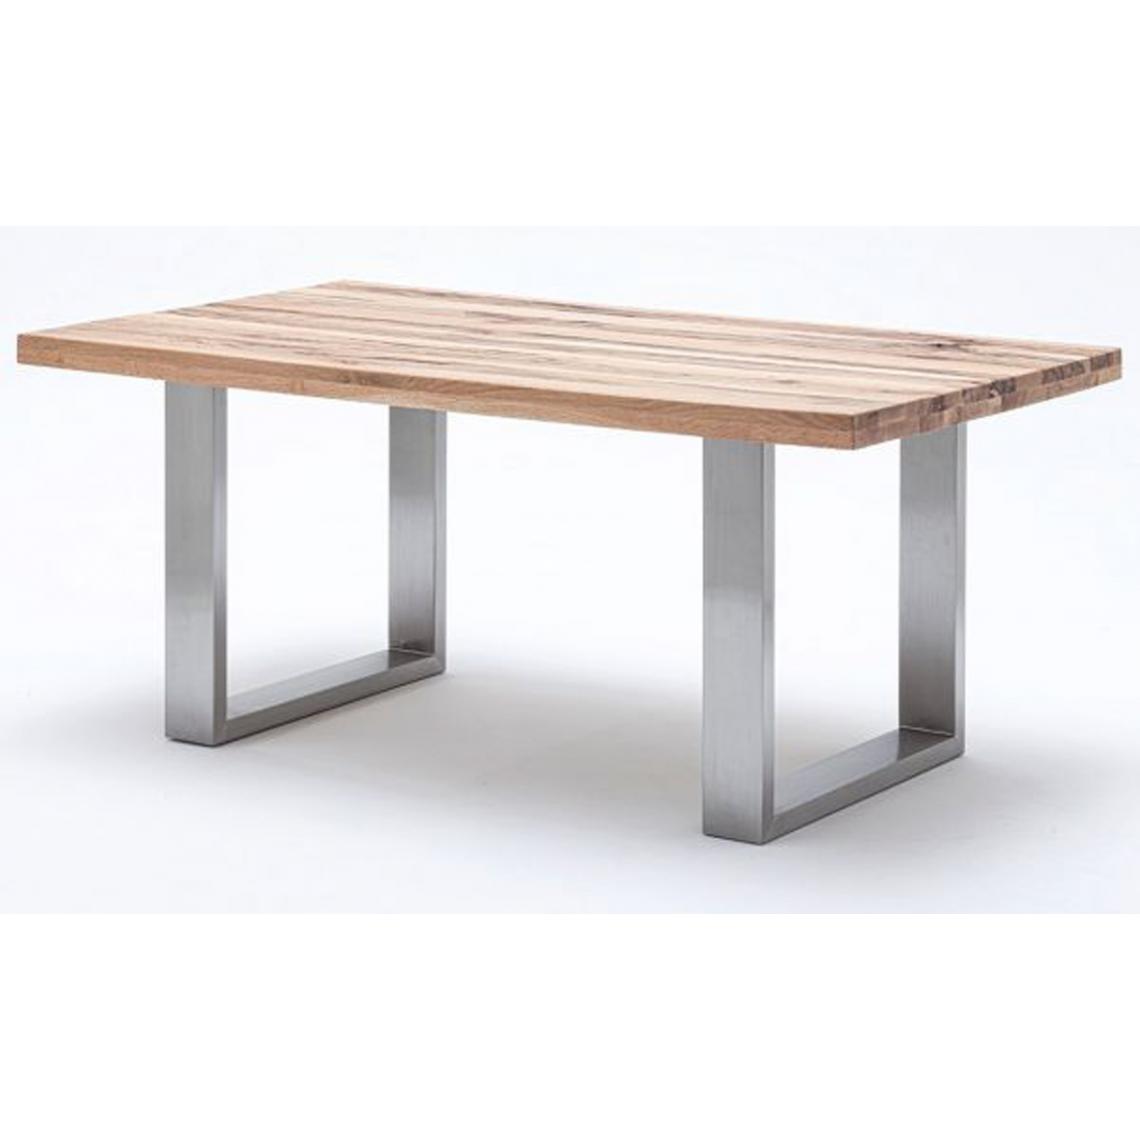 Pegane - Table à manger en chêne sauvage,laqué mat massif - L.180 x H.76 x P.100 cm -PEGANE- - Tables à manger